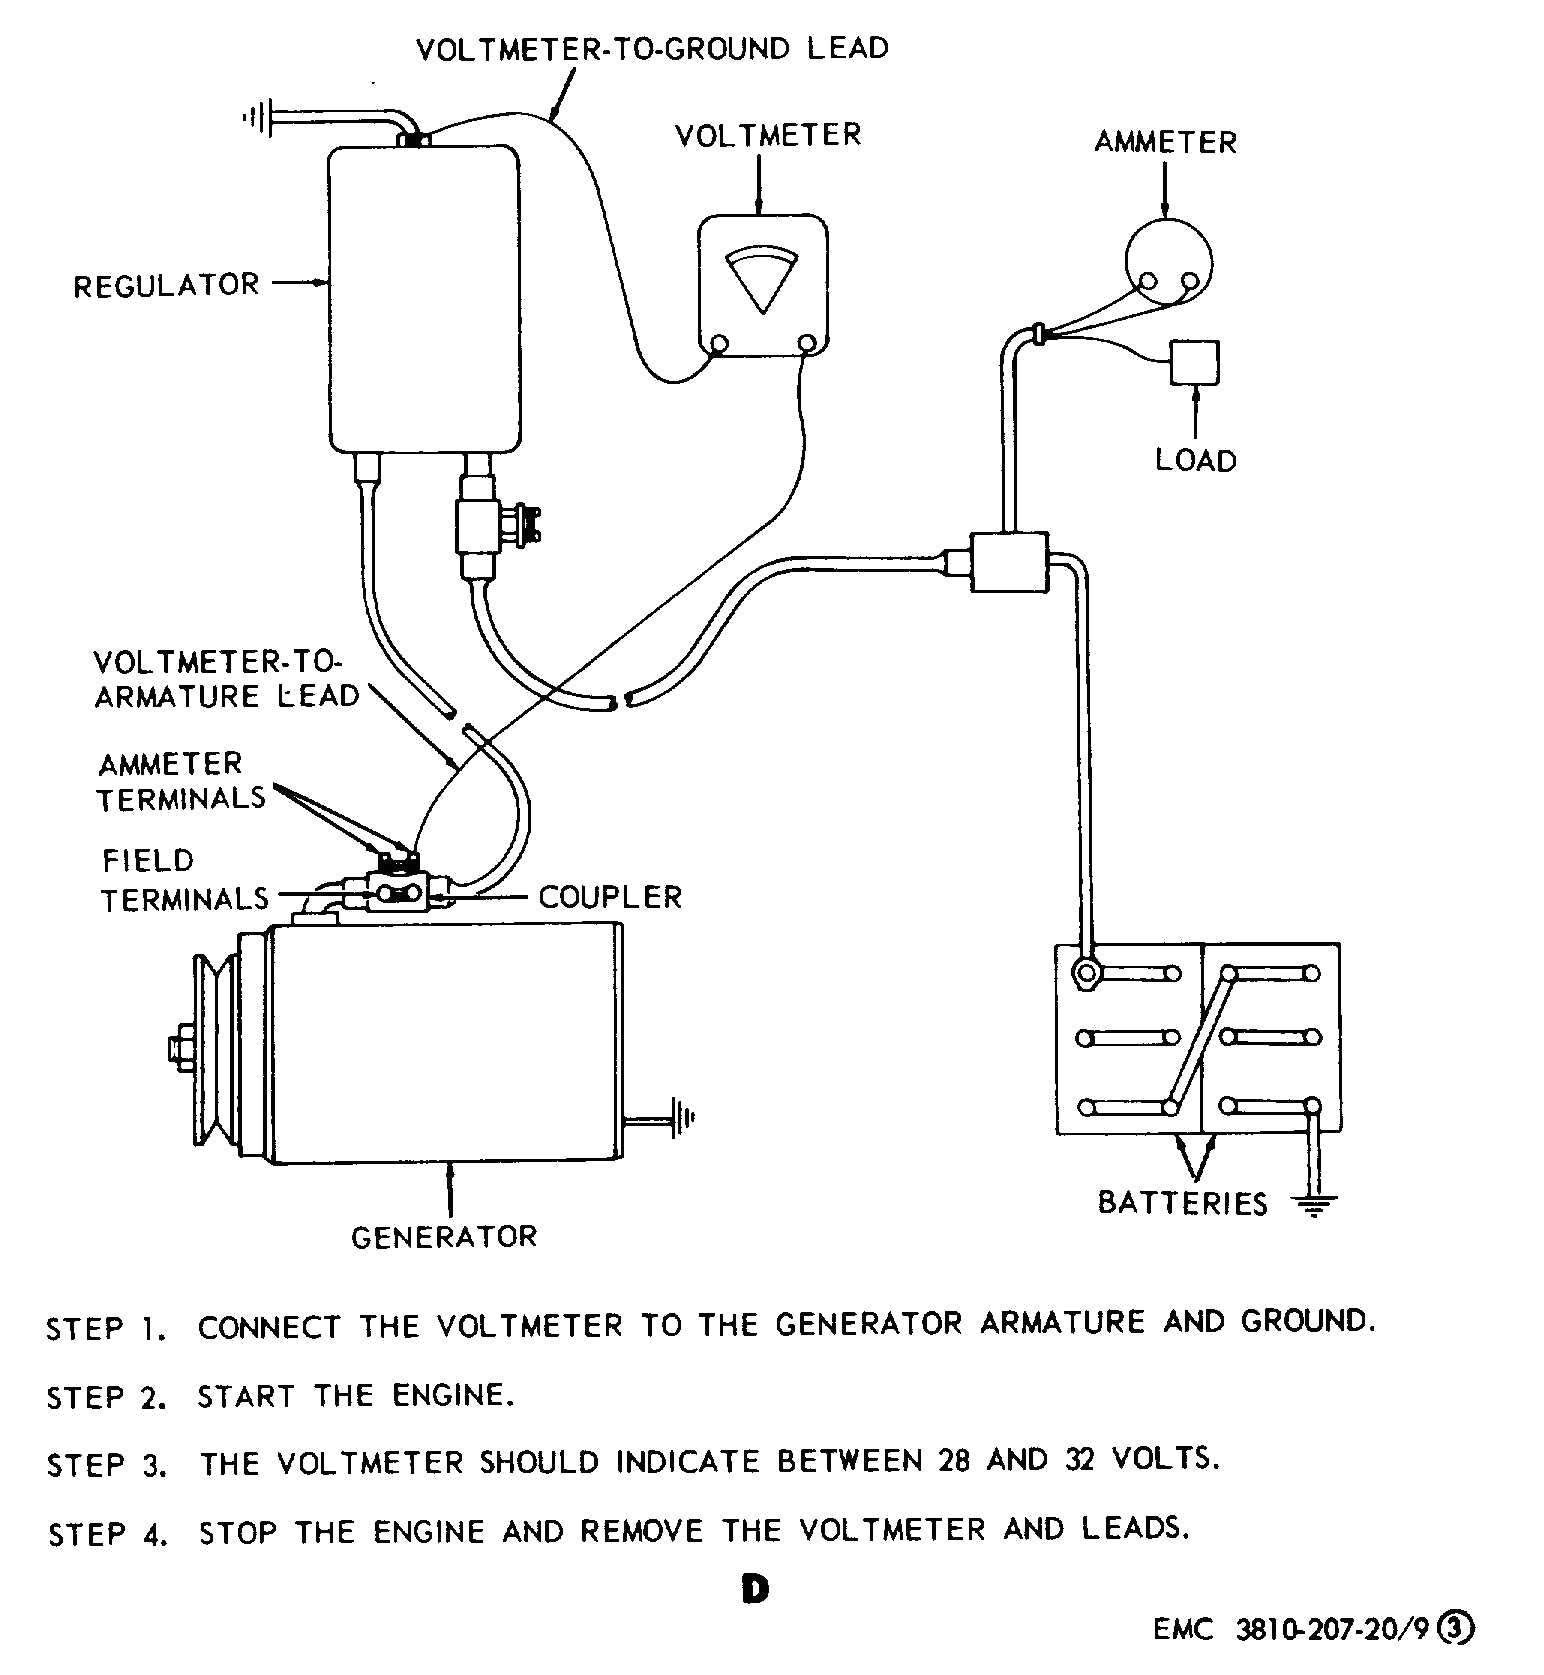 echlin voltage regulator wiring diagram wiring diagram pageechlin voltage regulator wiring diagram wiring diagram schema echlin